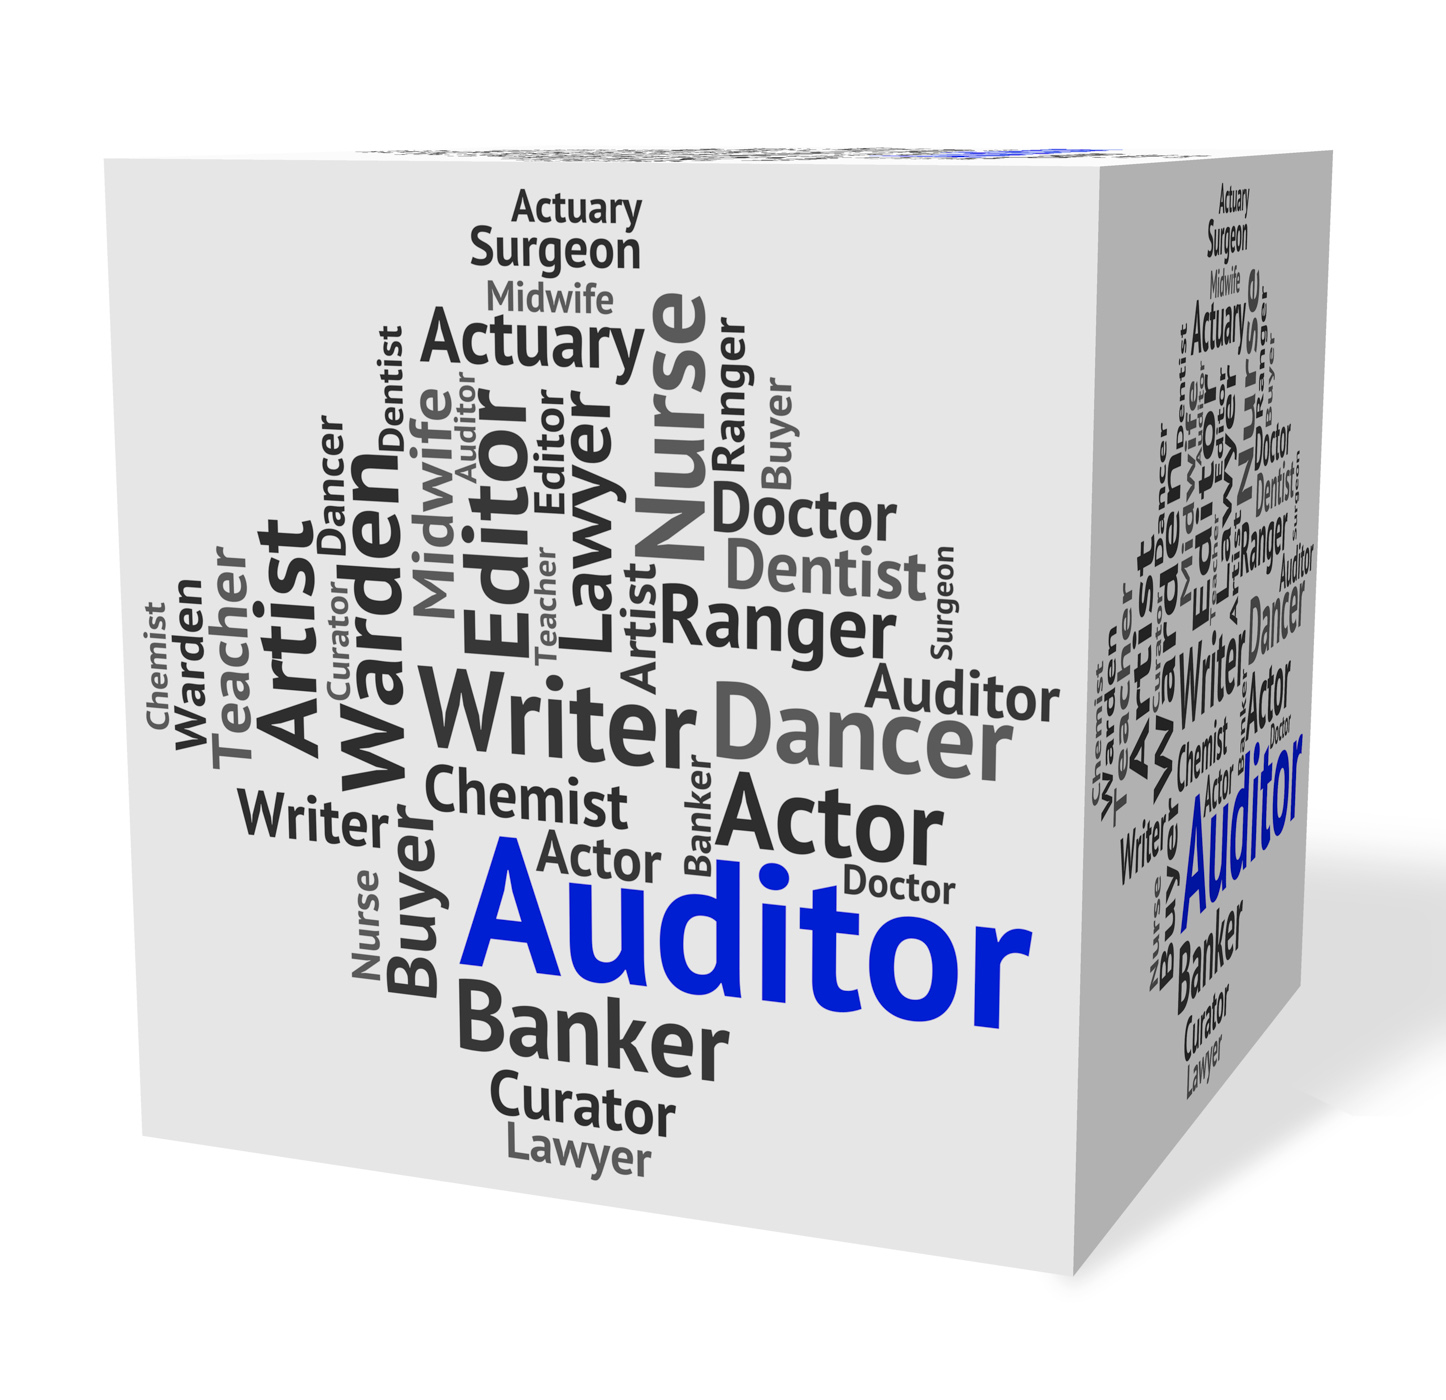 Auditor job represents text auditors and inspectors photo